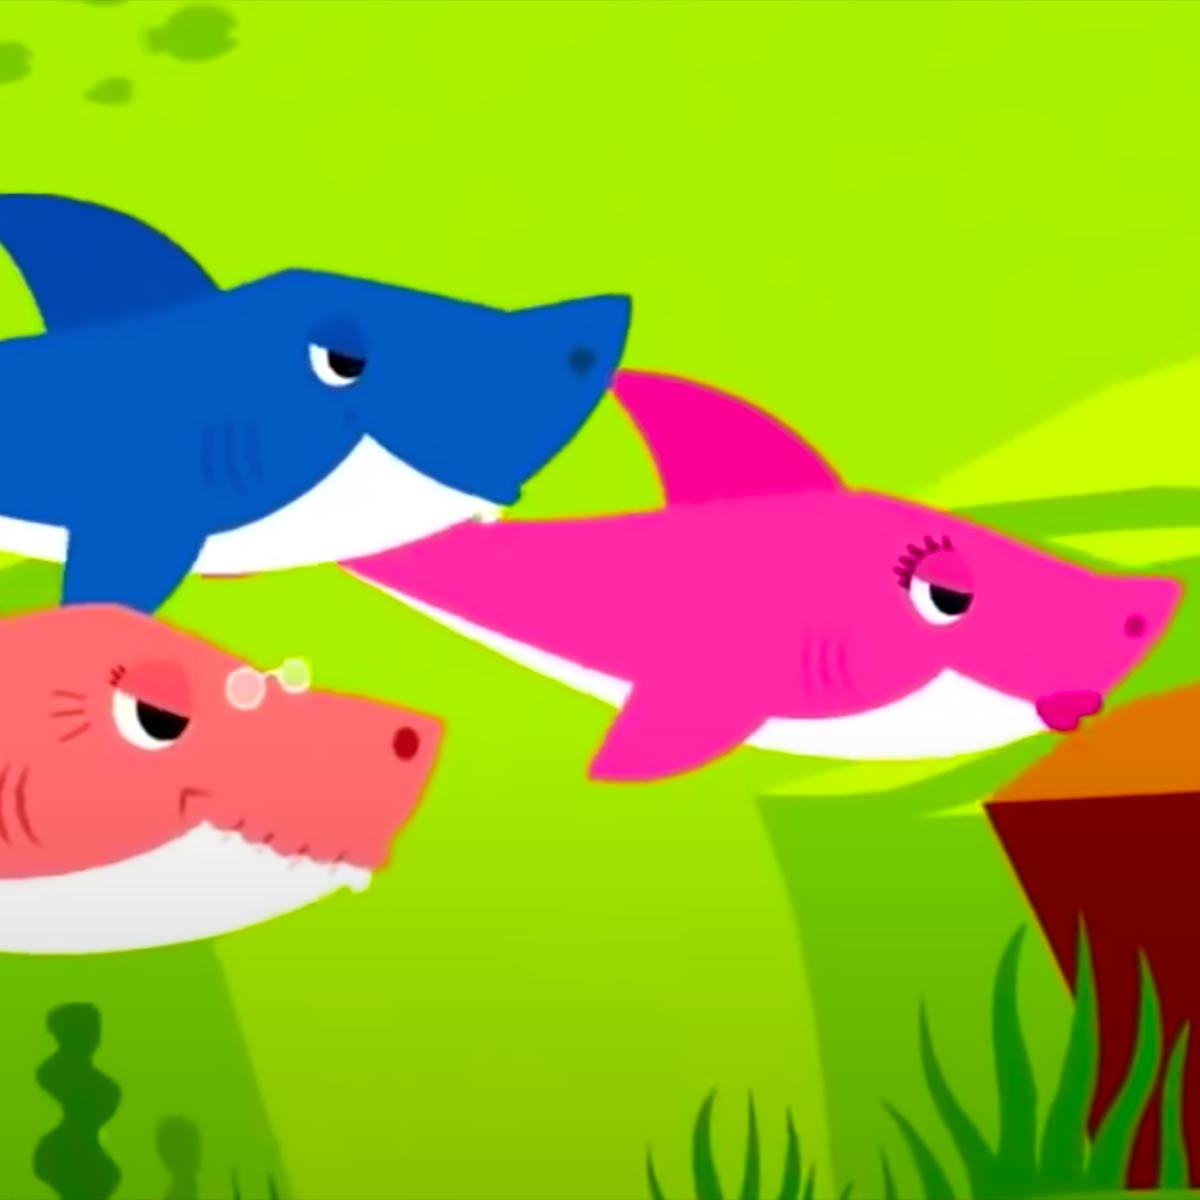 Play Baby Shark Piano Music Sheet On Virtual Piano - roblox piano keyboard sheets animals